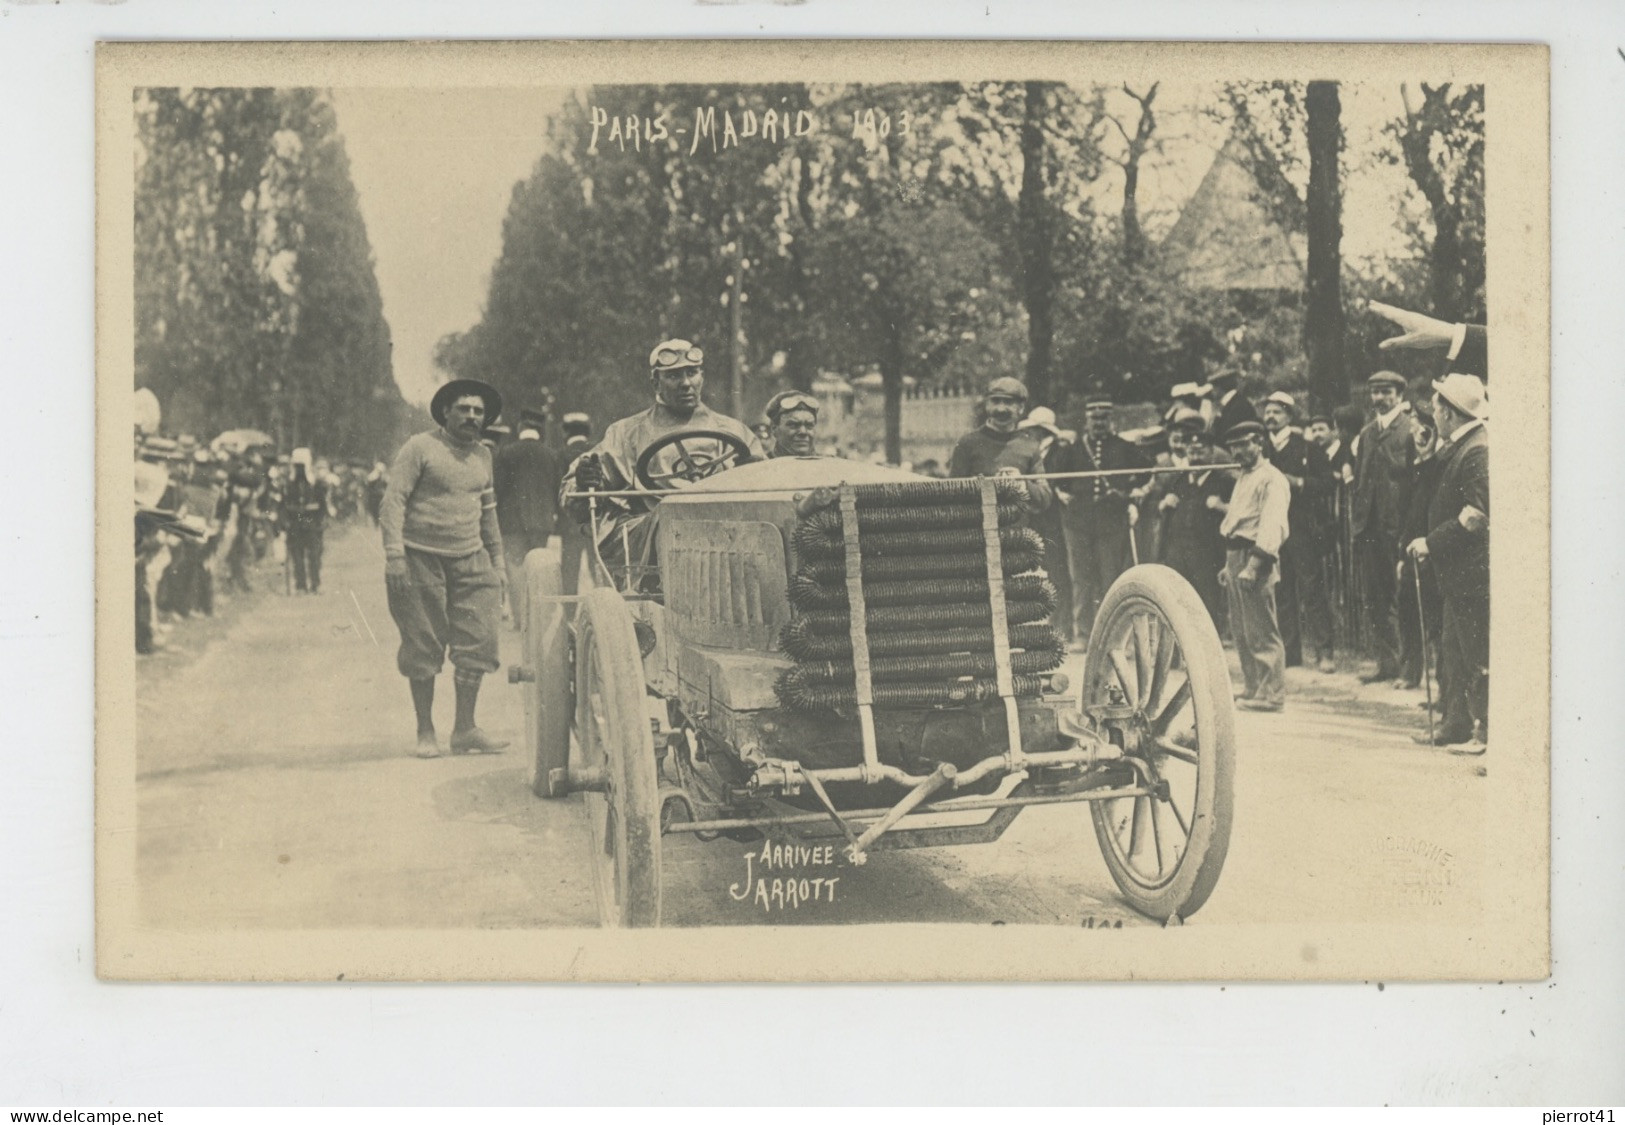 SPORT AUTOMOBILE - COURSE PARIS MADRID 1903 - BORDEAUX - Arrivée JARROTT - Carte Photo Réalisée Par Photo SERENI - Rallyes